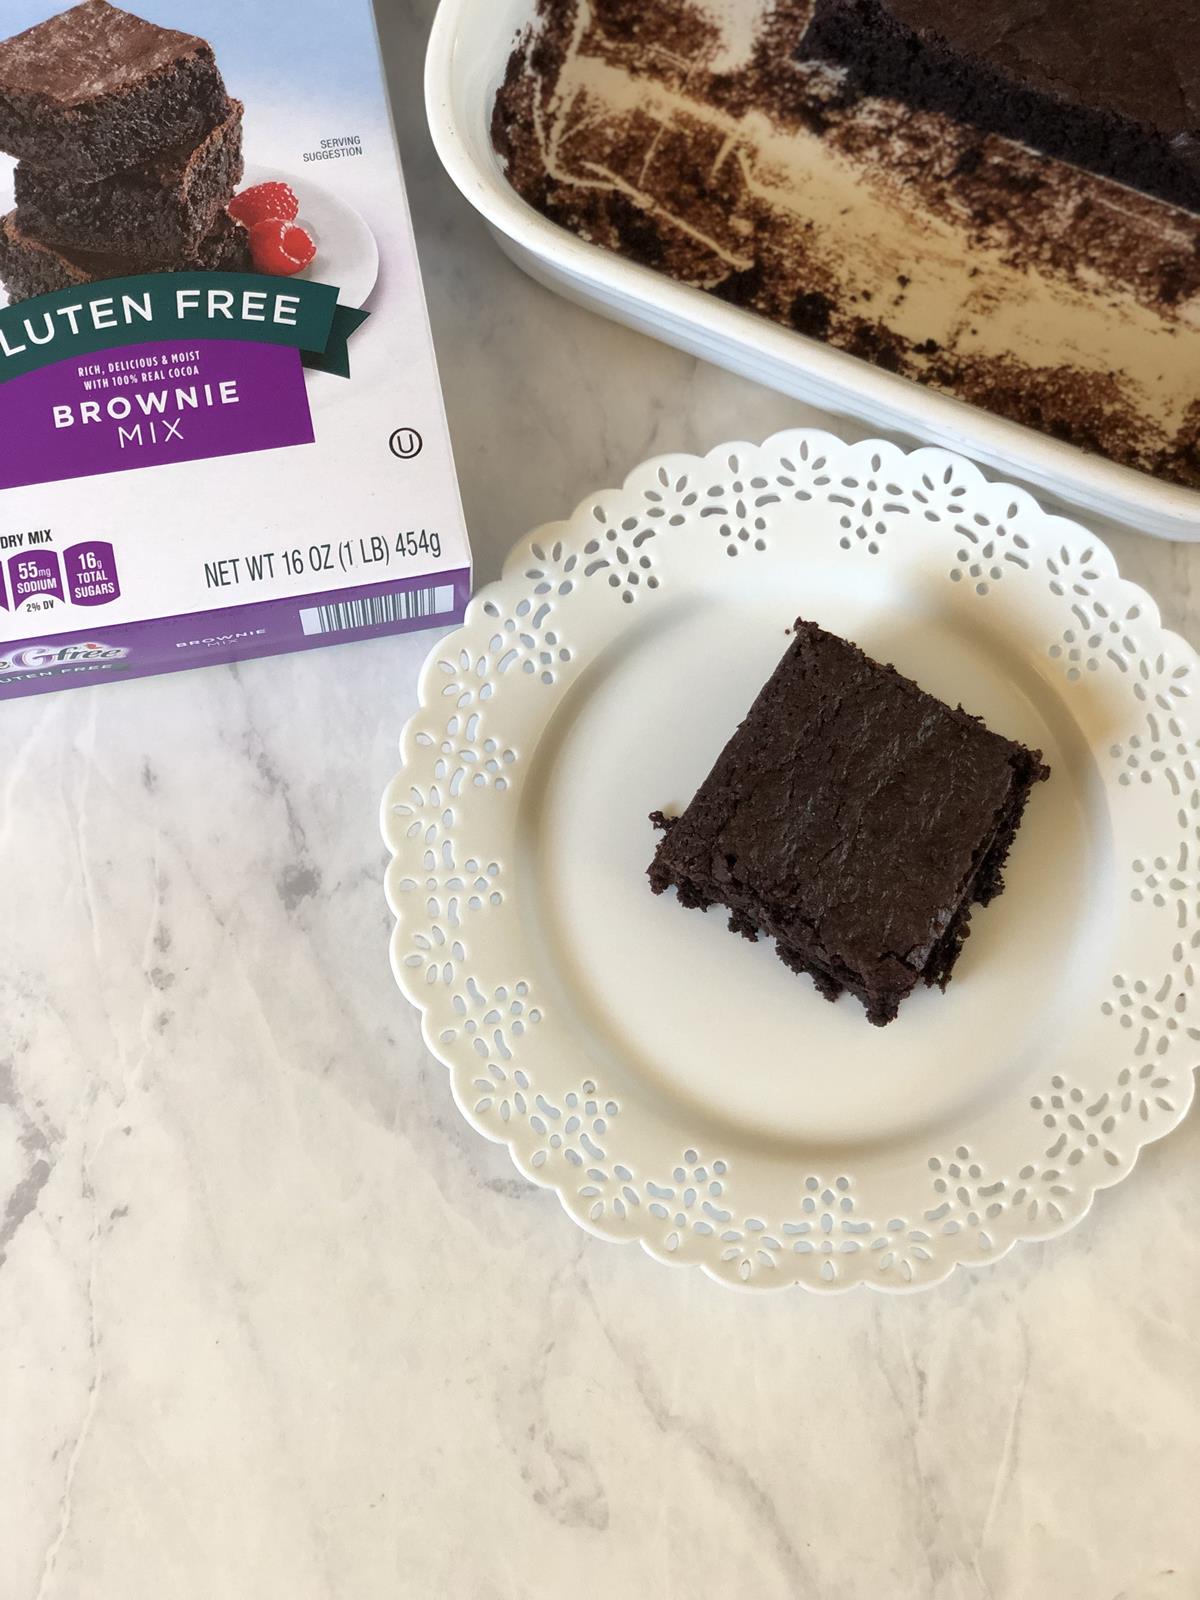 Næste Dag obligat Aldi Gluten Free Brownie Mix - Gluten Free Kitchen Adventures